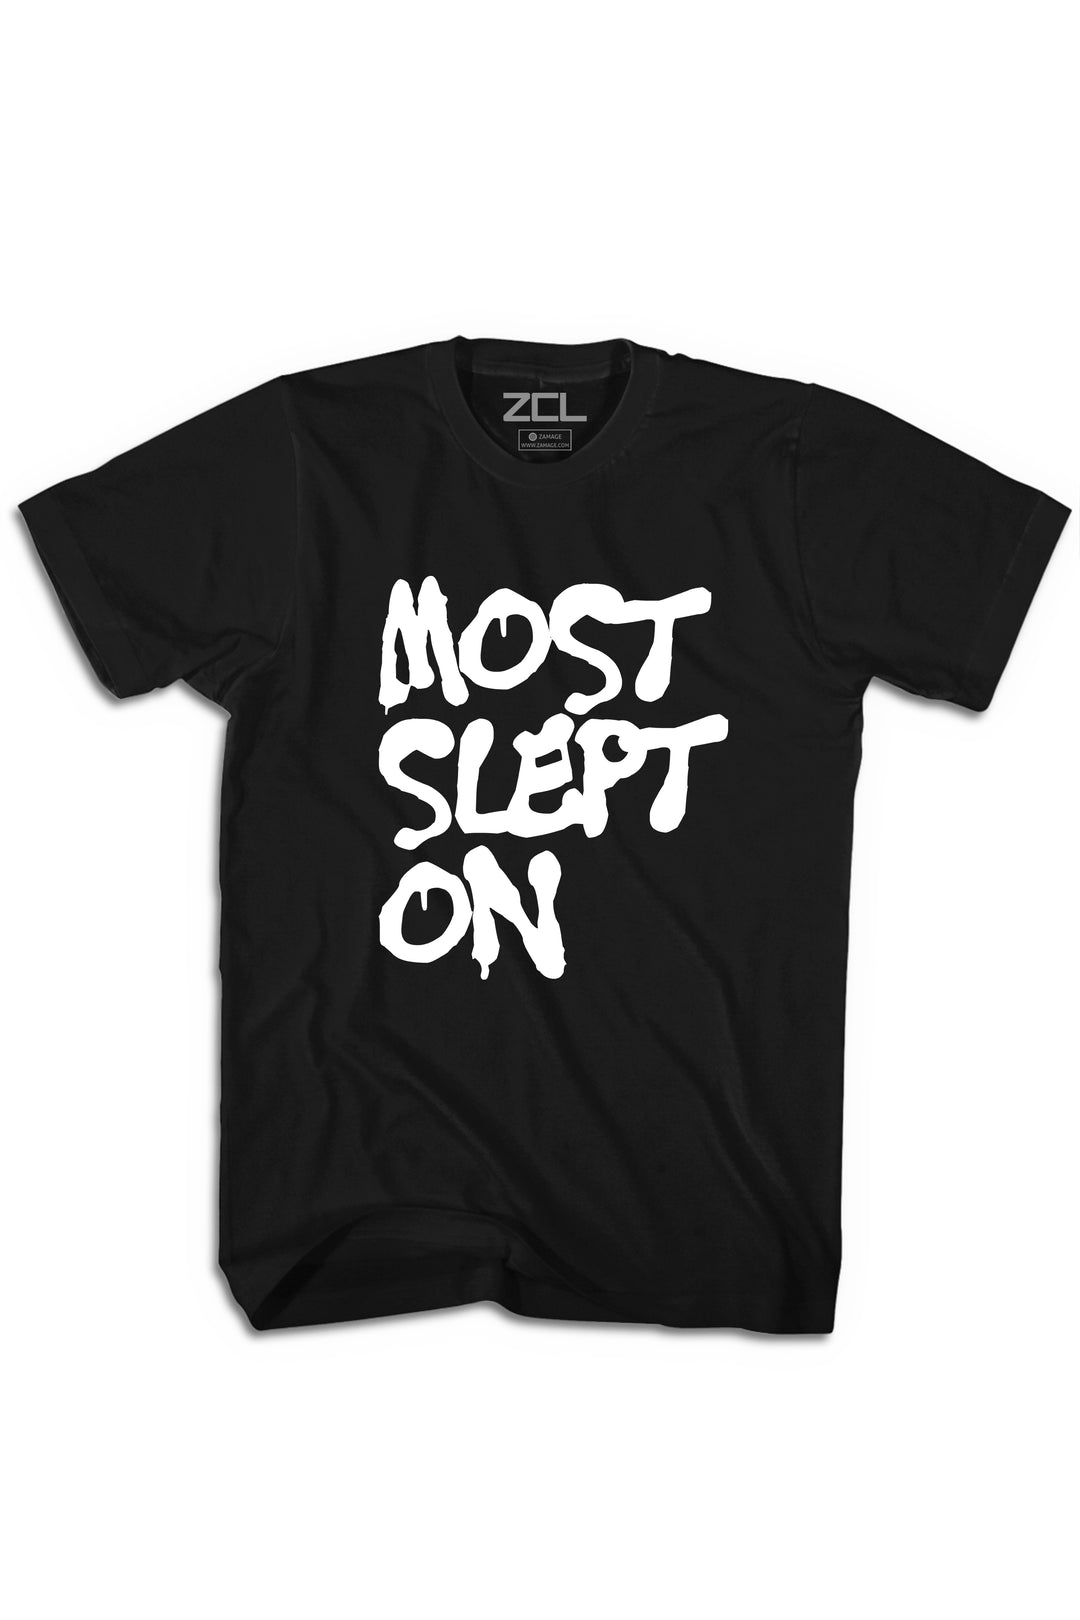 Slept On Tee (White Logo) - Zamage